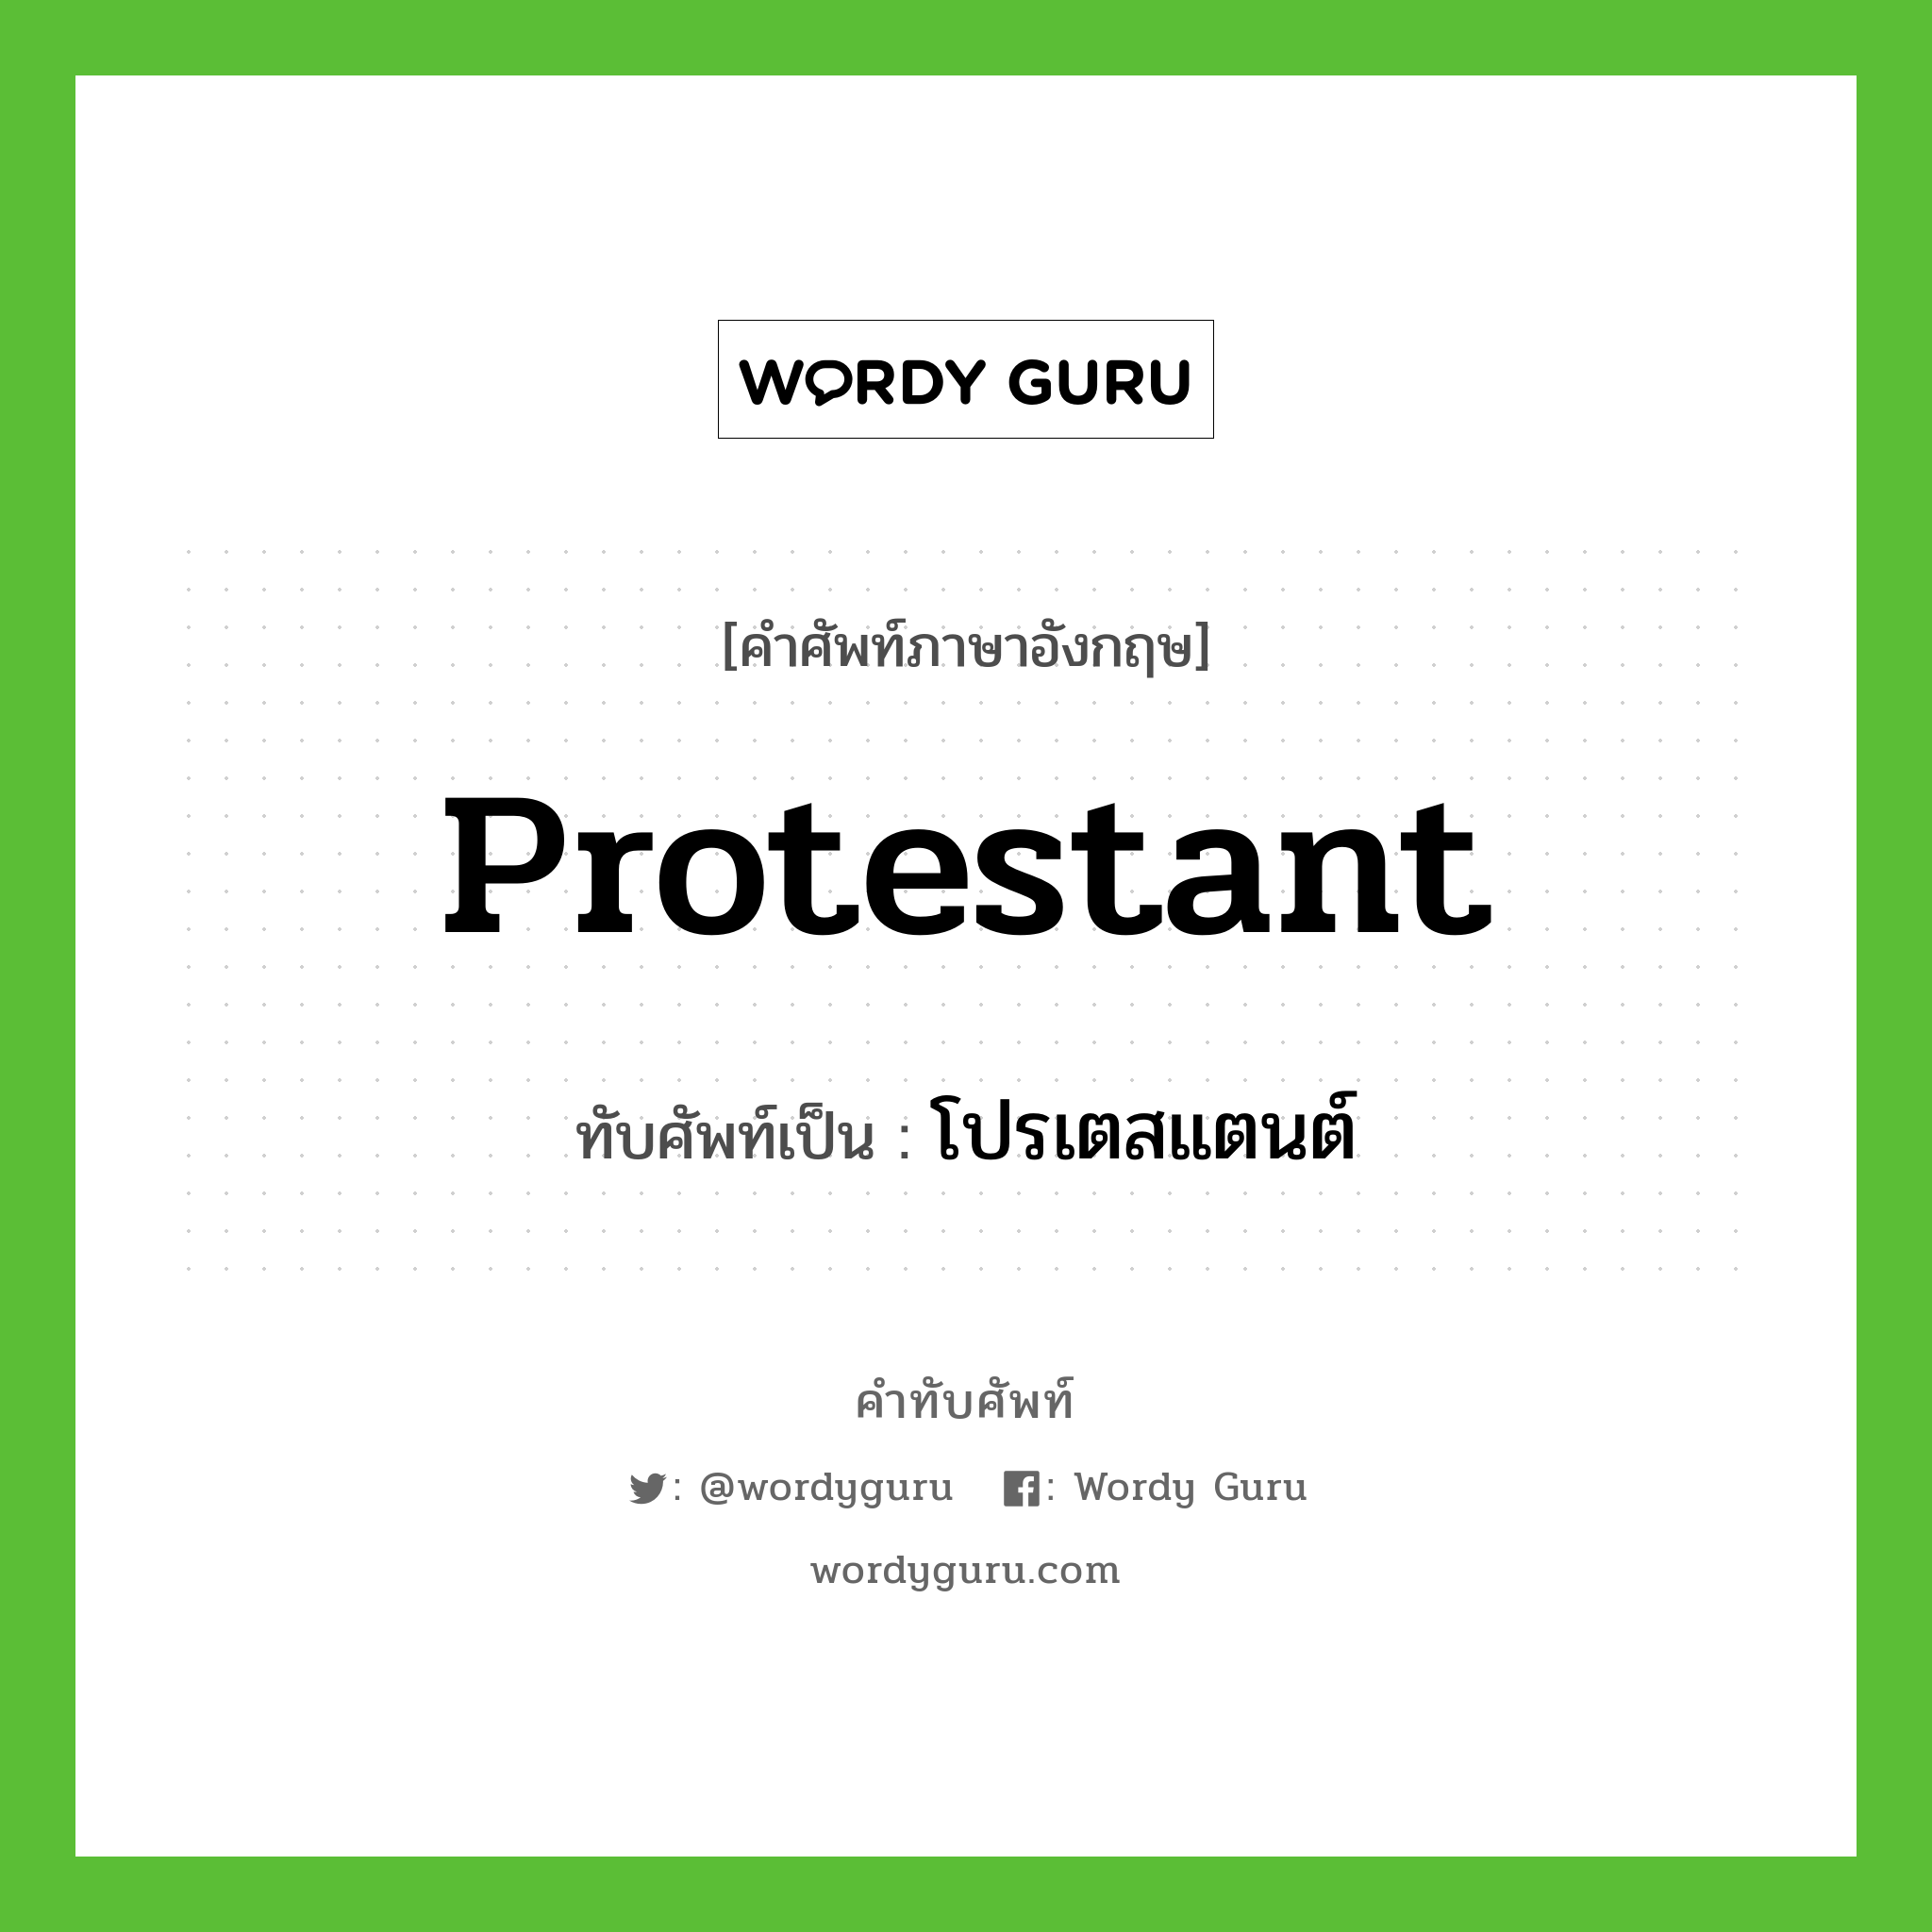 Protestant เขียนเป็นคำไทยว่าอะไร?, คำศัพท์ภาษาอังกฤษ Protestant ทับศัพท์เป็น โปรเตสแตนต์